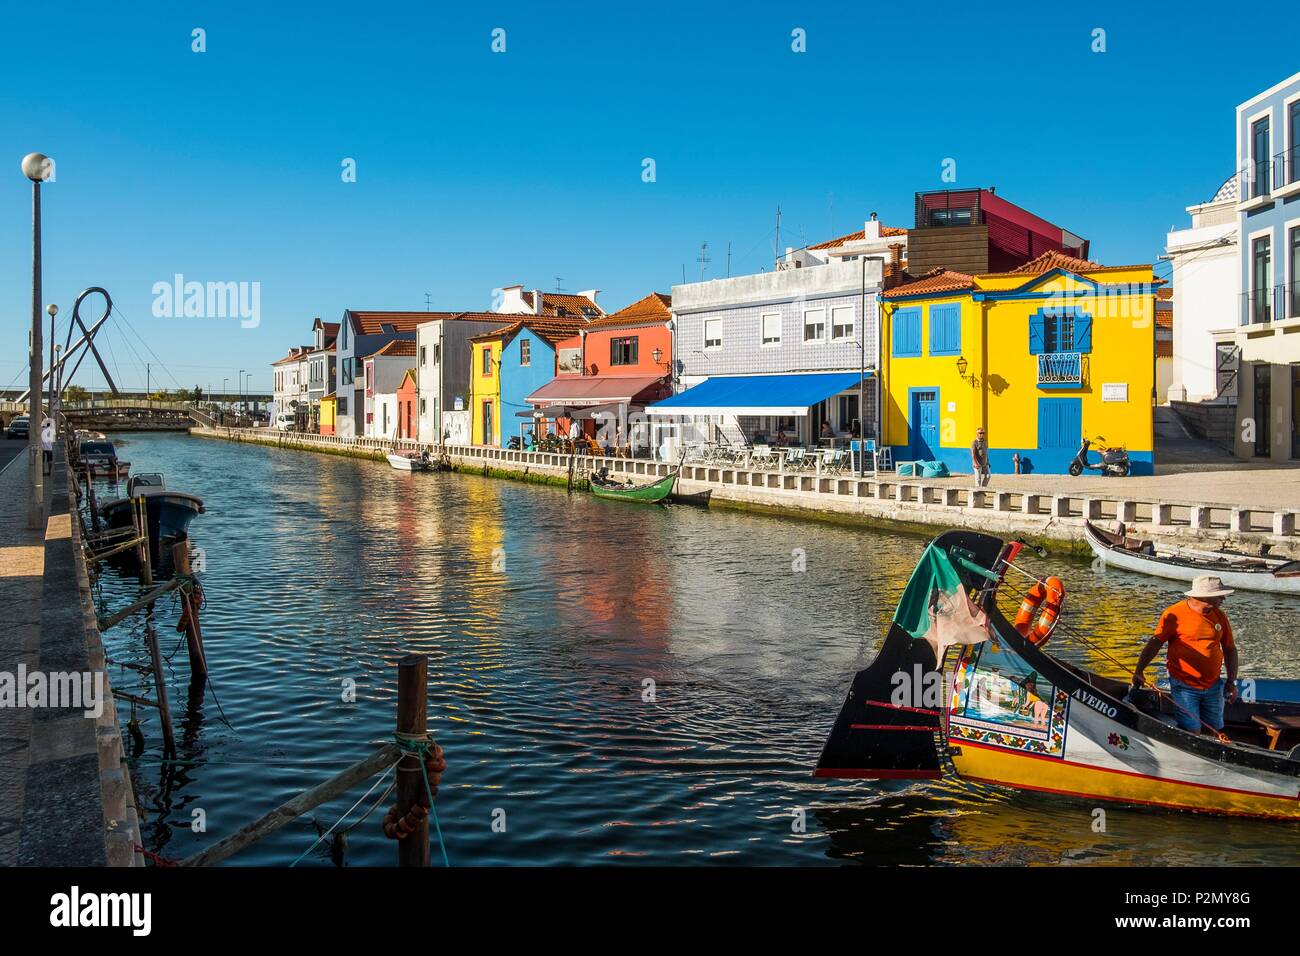 Portugal, Region Centre, Aveiro, das kleine Venedig von Portugal die Moliceiros, traditionelle Boote, die spezifisch für die Region, die Ernte Algen verwendet wurden. Stockfoto